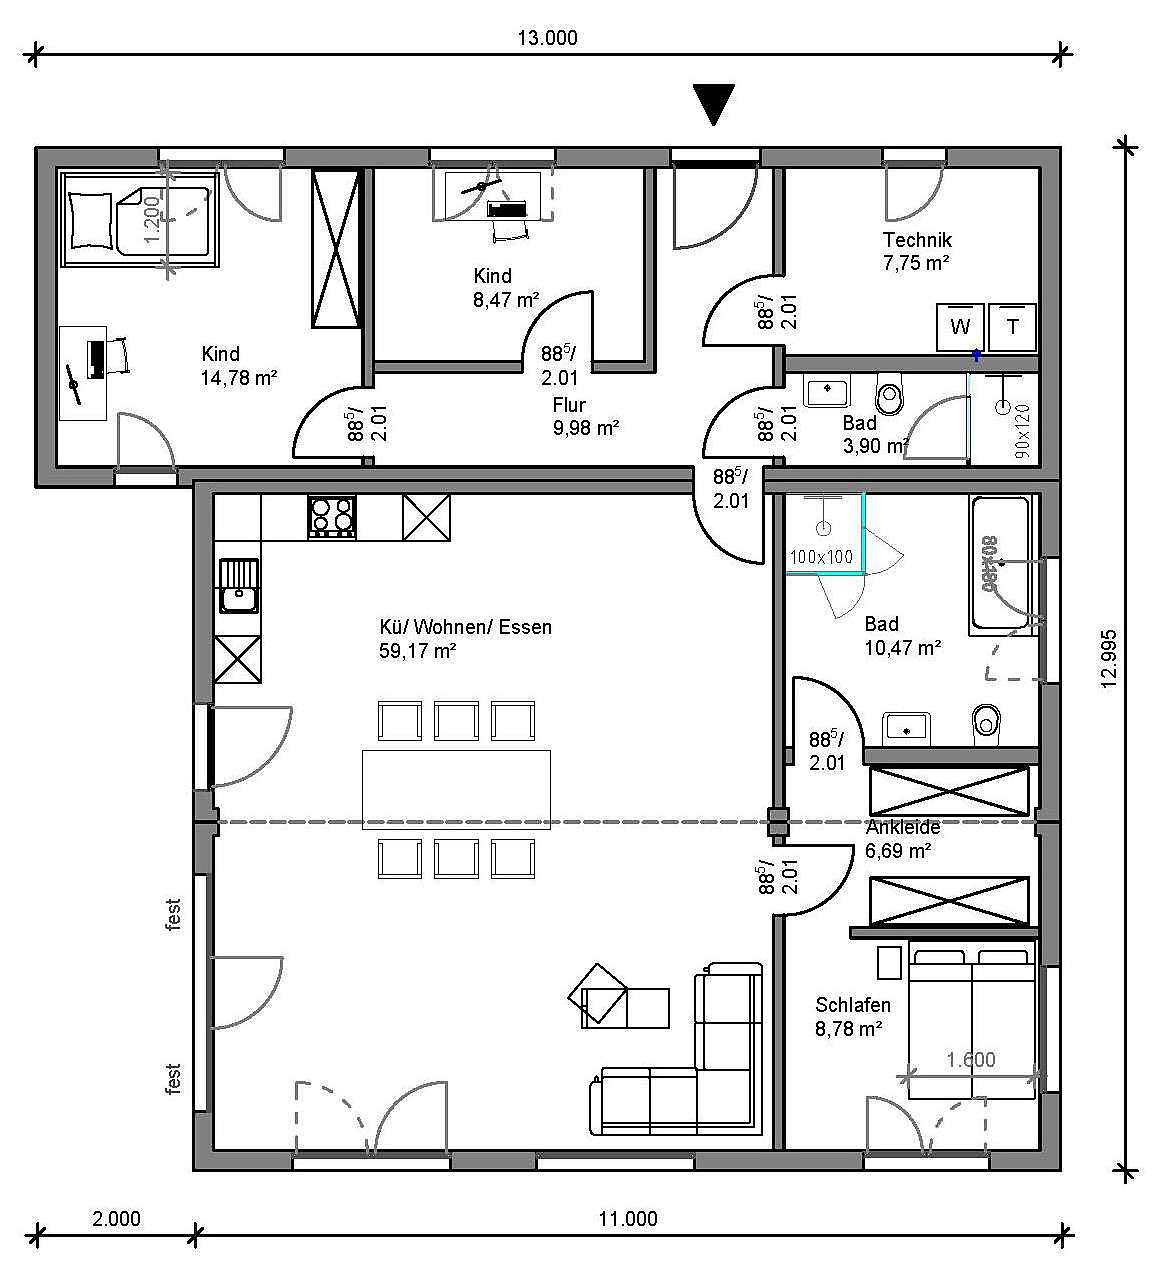 Ein Tinyhouse, dass sich z. B. als hervorragend als Einfamilienhaus mit zwei Kinderzimmern mit einem großen Technik-/Hauswirtschaftsraum eignet - 122qm